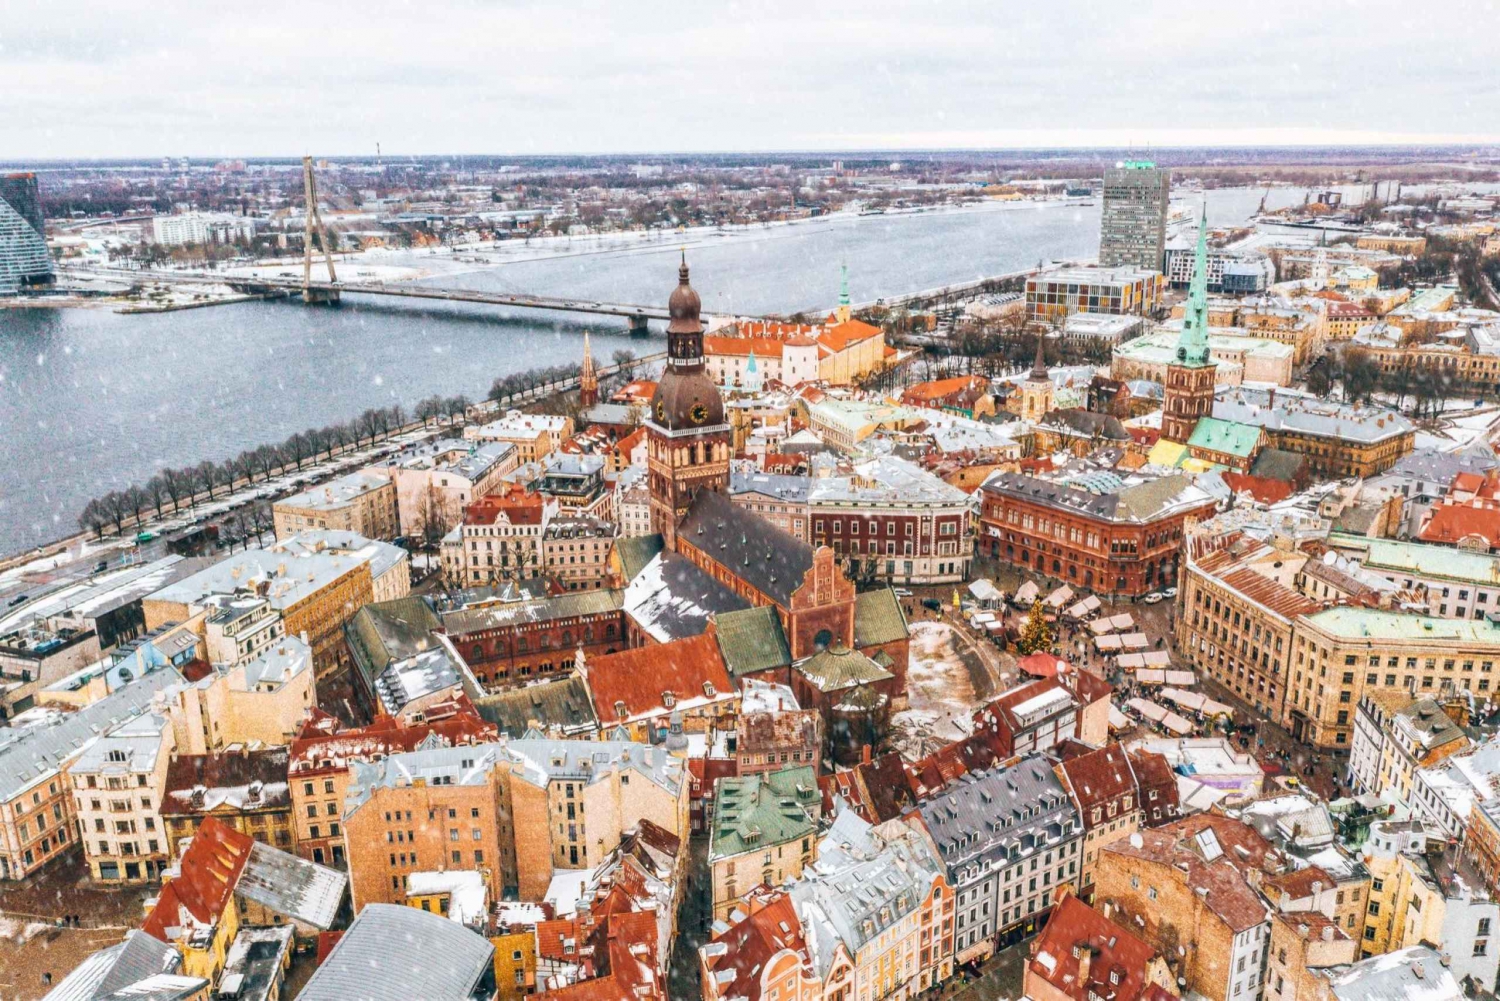 Riga: Express wandeling met een local in 60 minuten